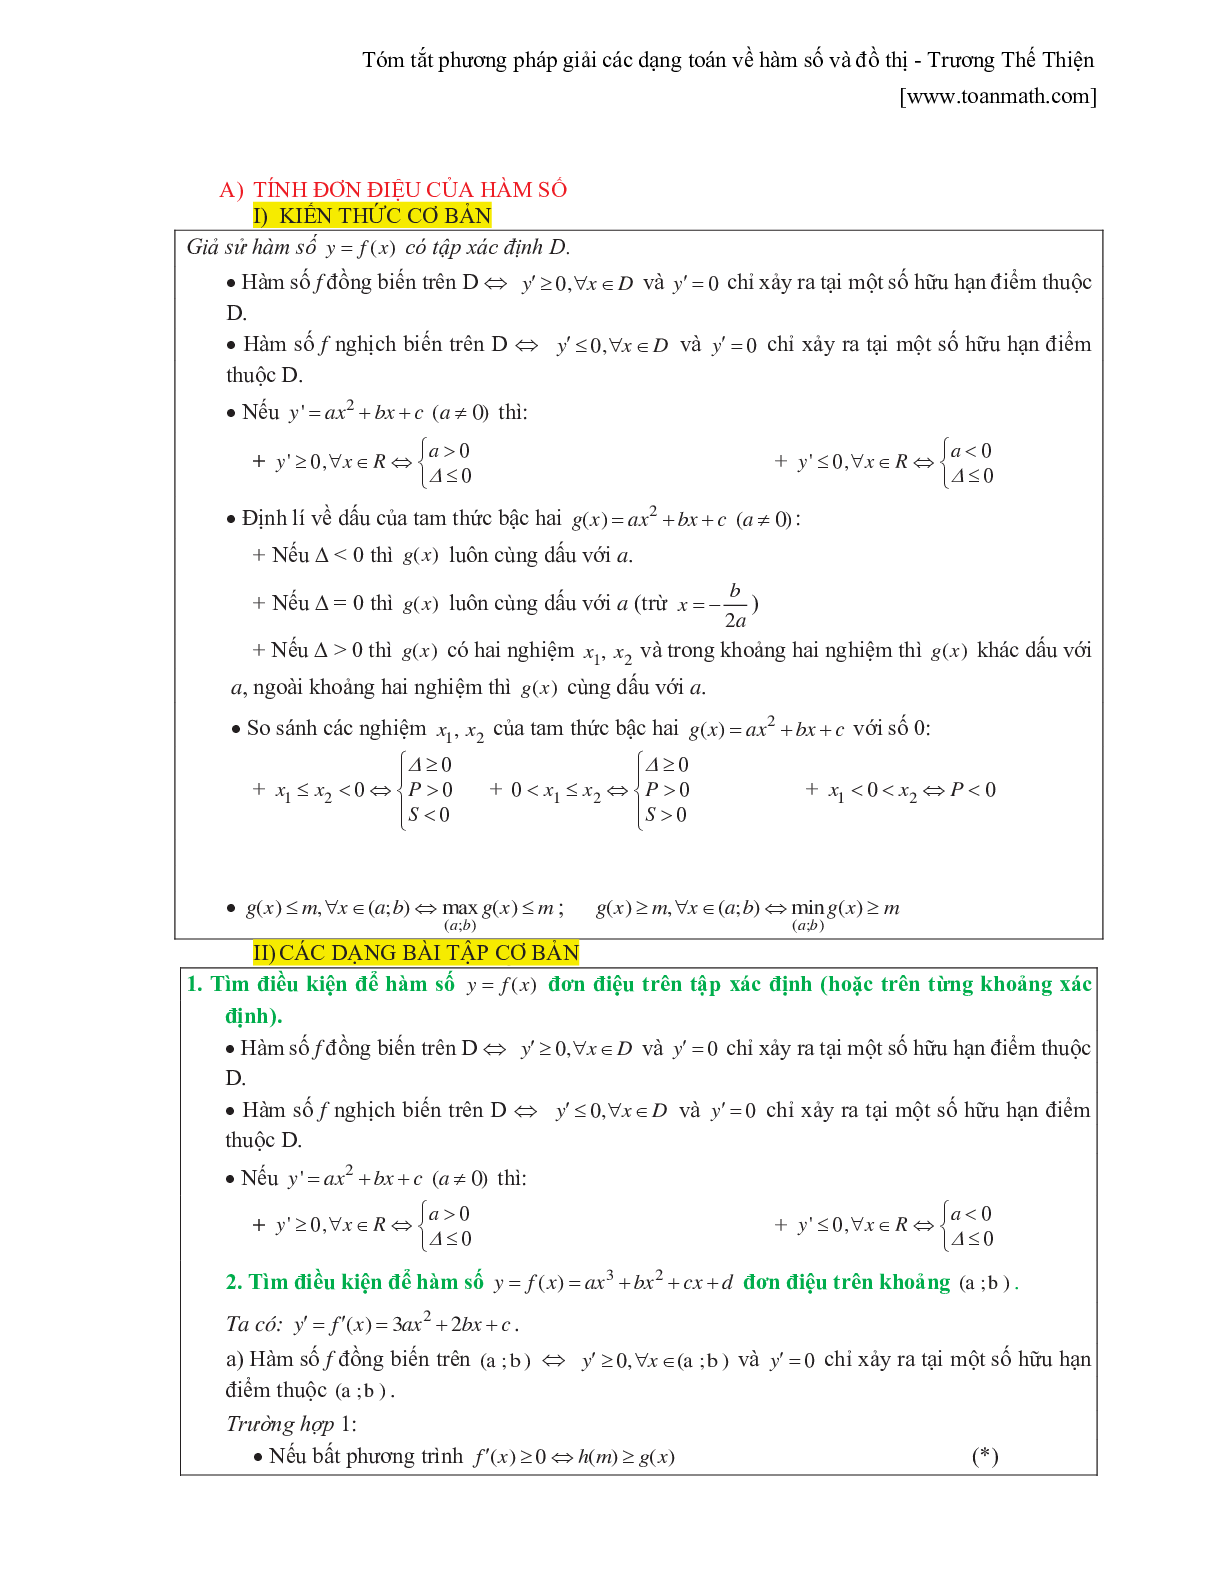 Tóm tắt phương pháp giải các dạng toán về hàm số và đồ thị (trang 1)